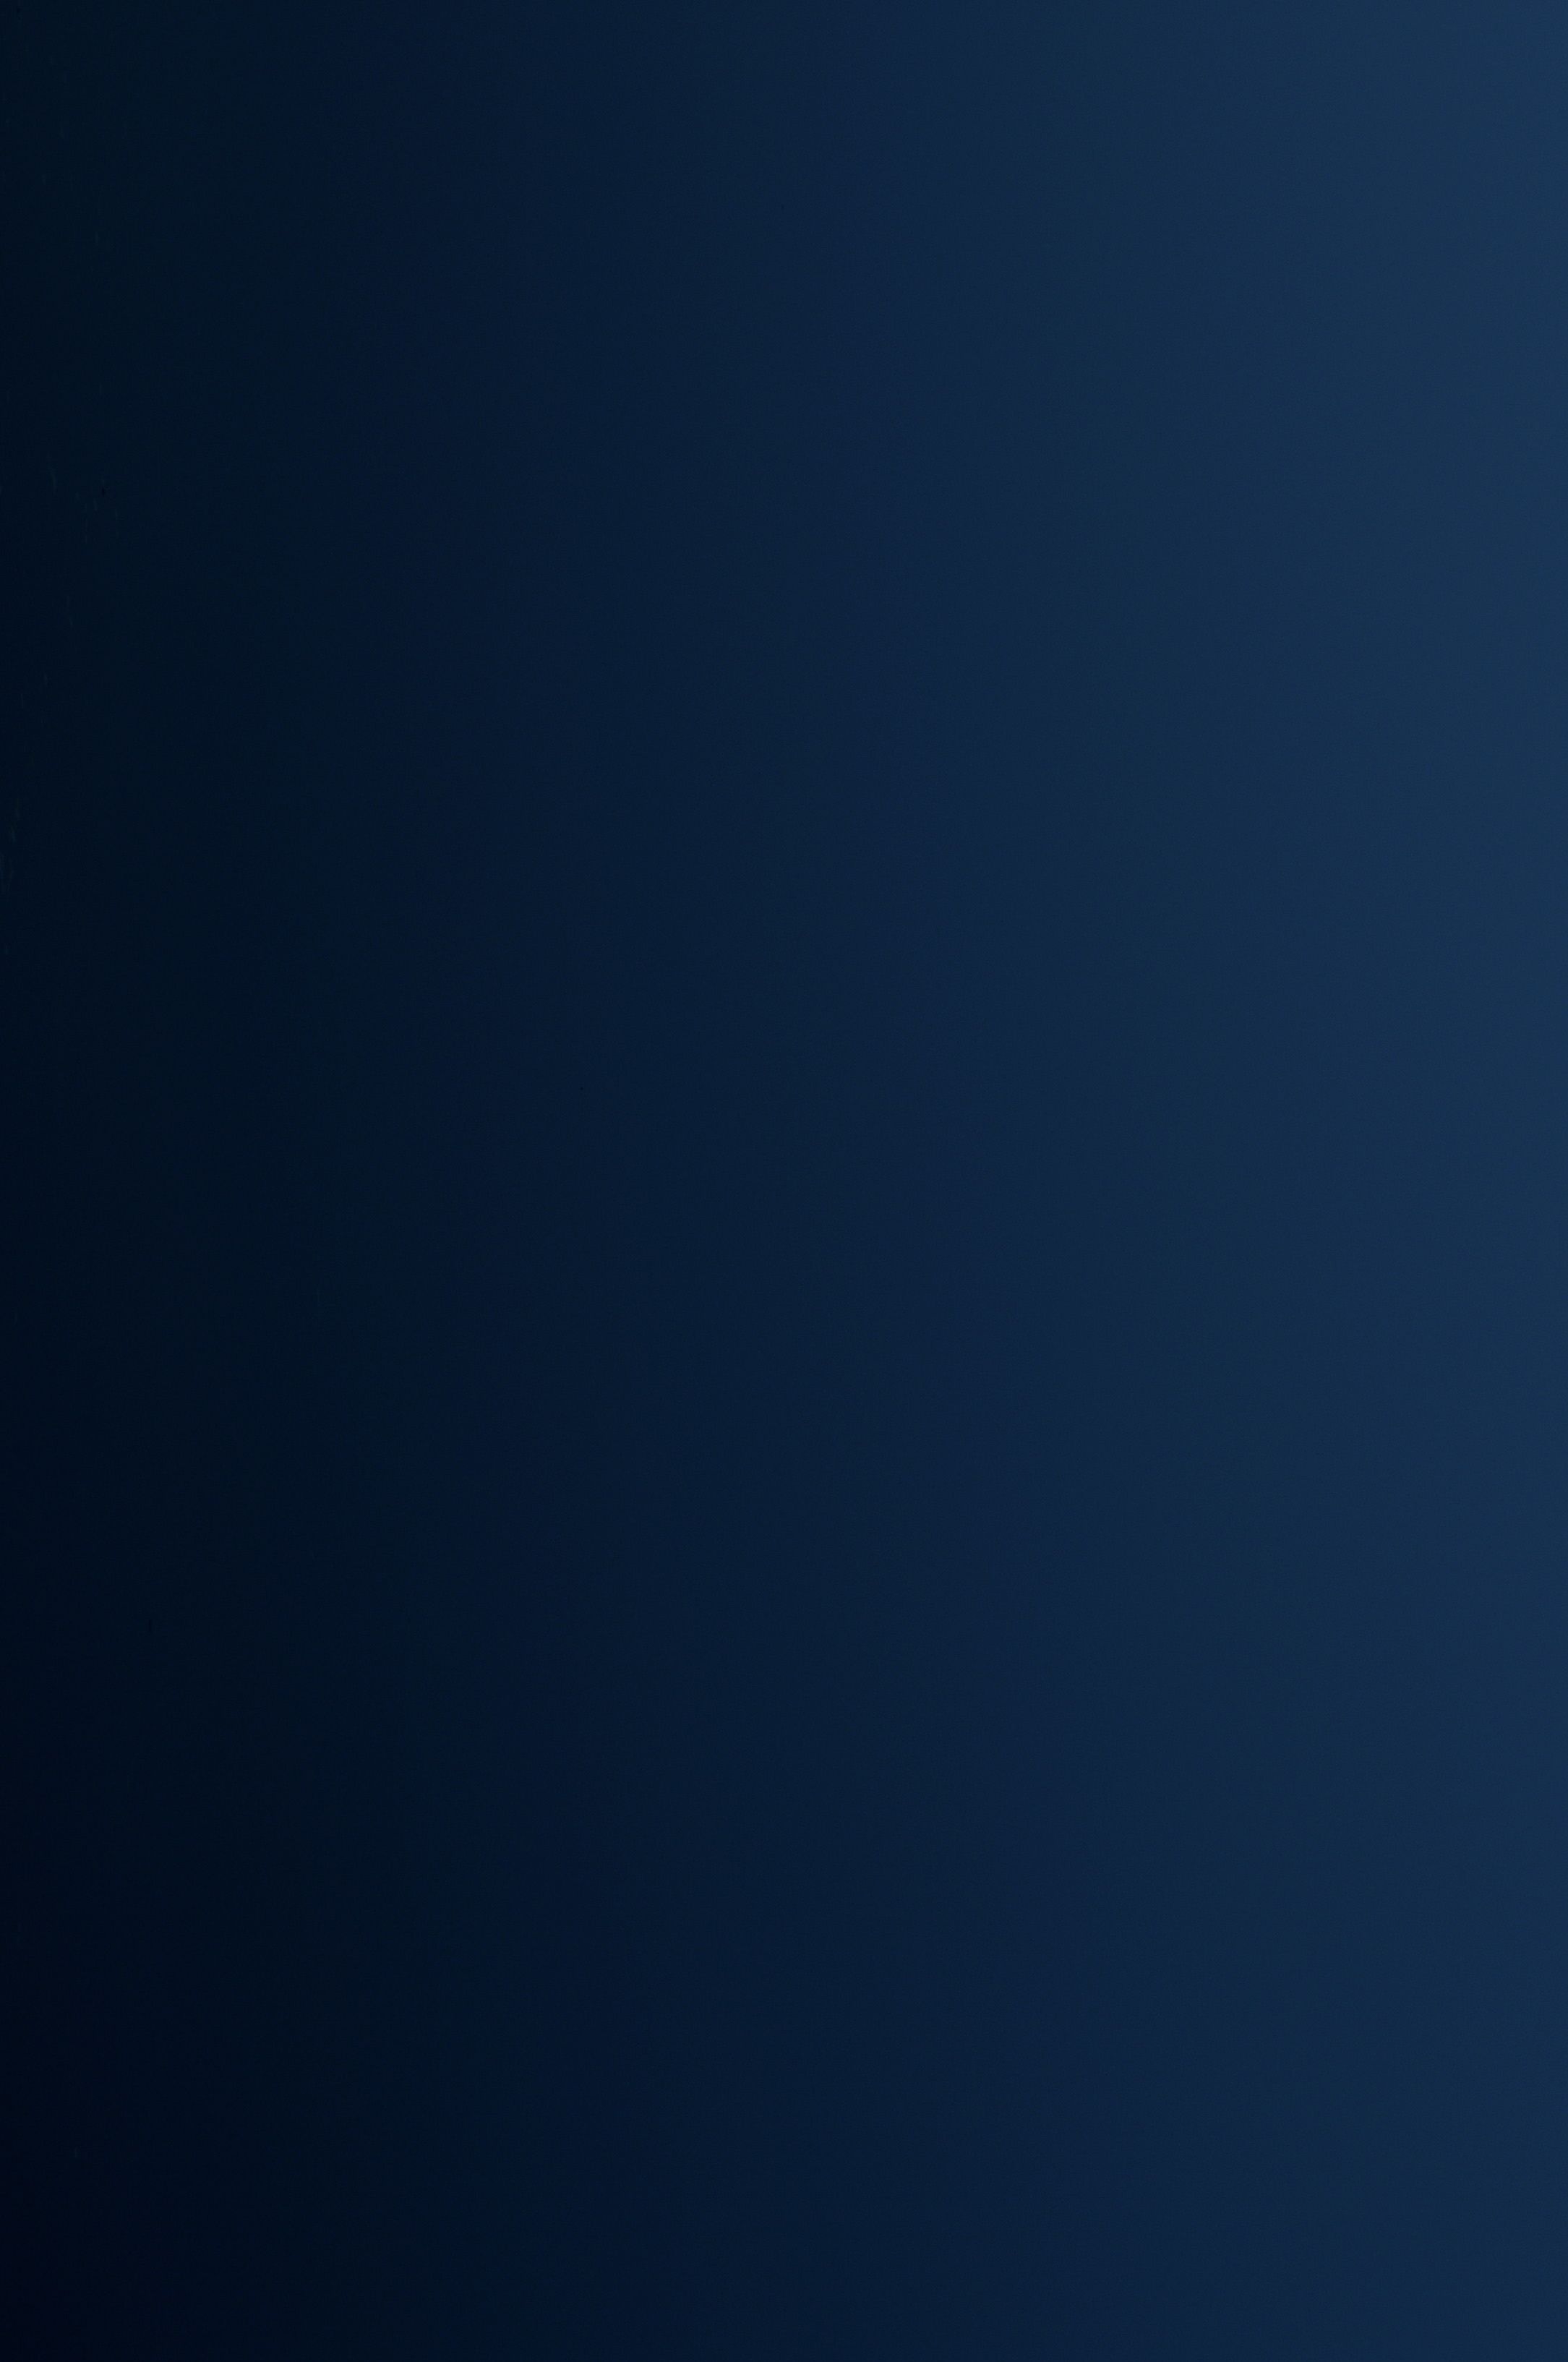 Dark Blue - Iphone Dark Blue Background - HD Wallpaper 